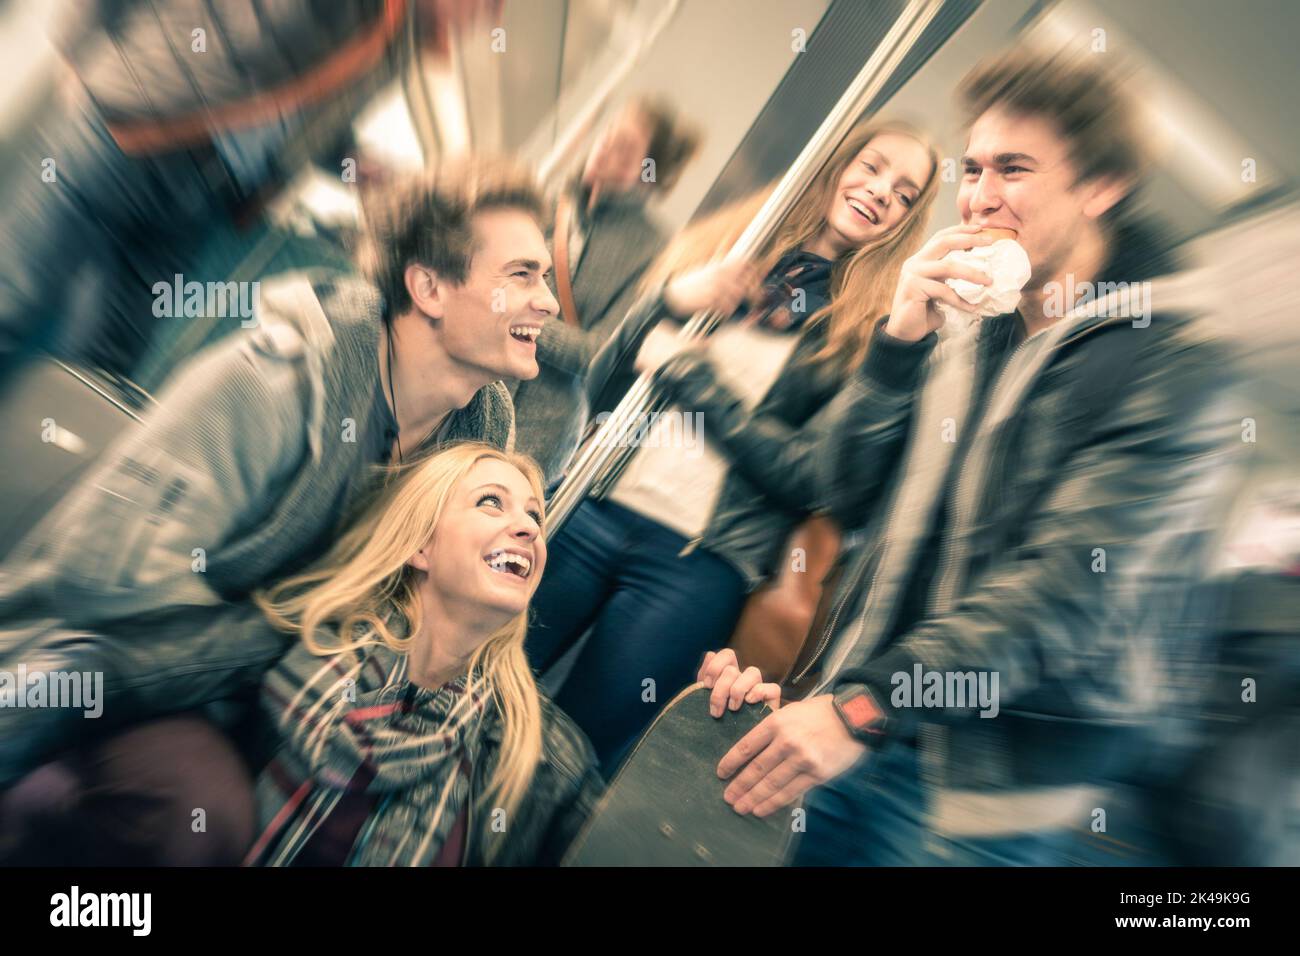 Gruppe von jungen Hipster-Freunden, die Spaß haben und im U-Bahn-Zug reden - Vintage gefilterter Look mit radialer Unschärfe - Konzept der Jugend und Stockfoto